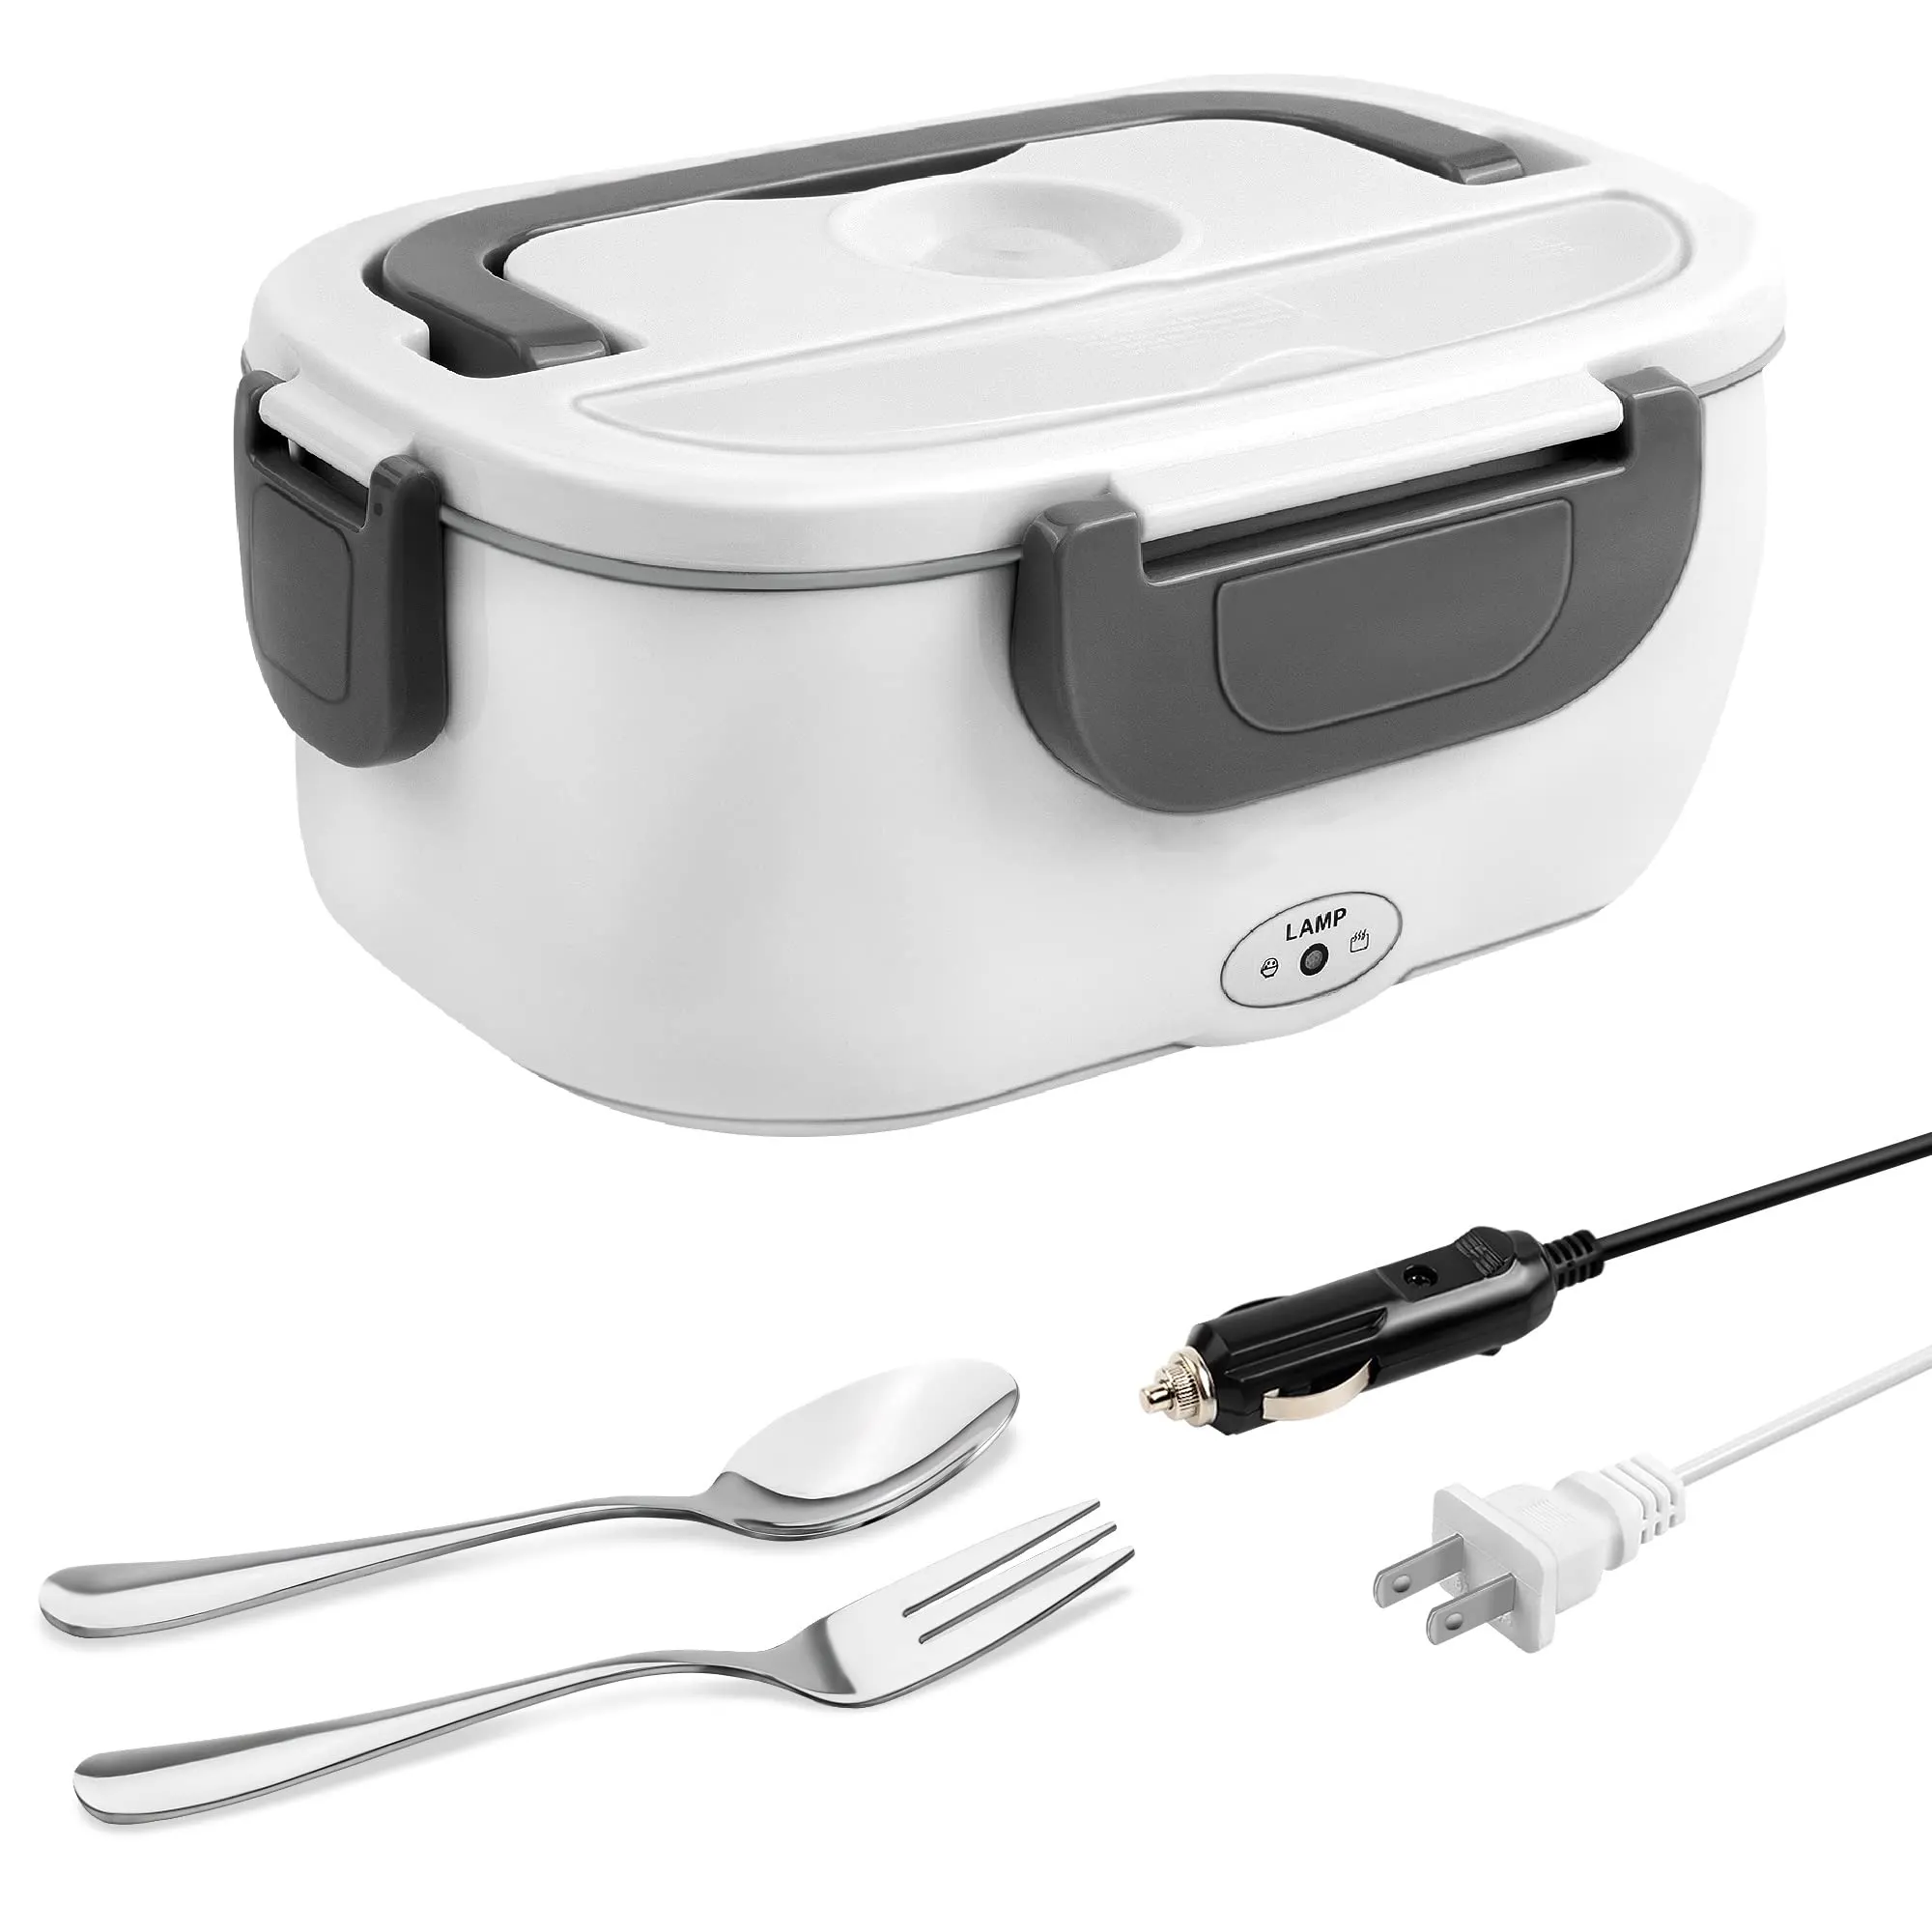 Pemanas makanan baja tahan karat portabel, kotak makan siang listrik dengan tas jinjing 110V/12V, wadah bisa dilepas